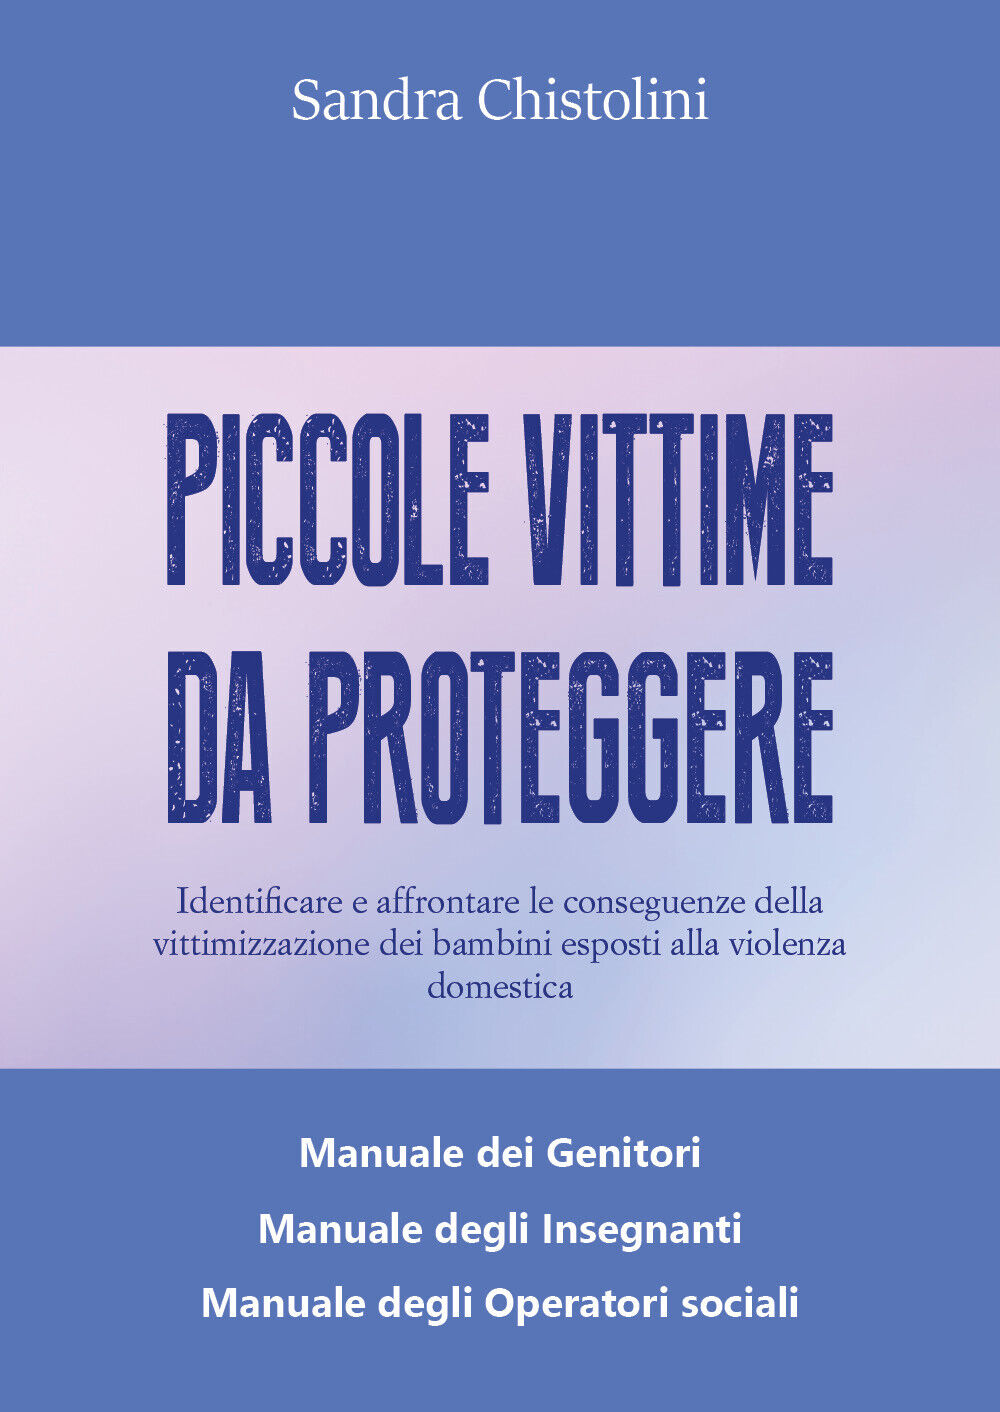 Piccole vittime da proteggere  di Sandra Chistolini,  2020,  Libellula Edizioni